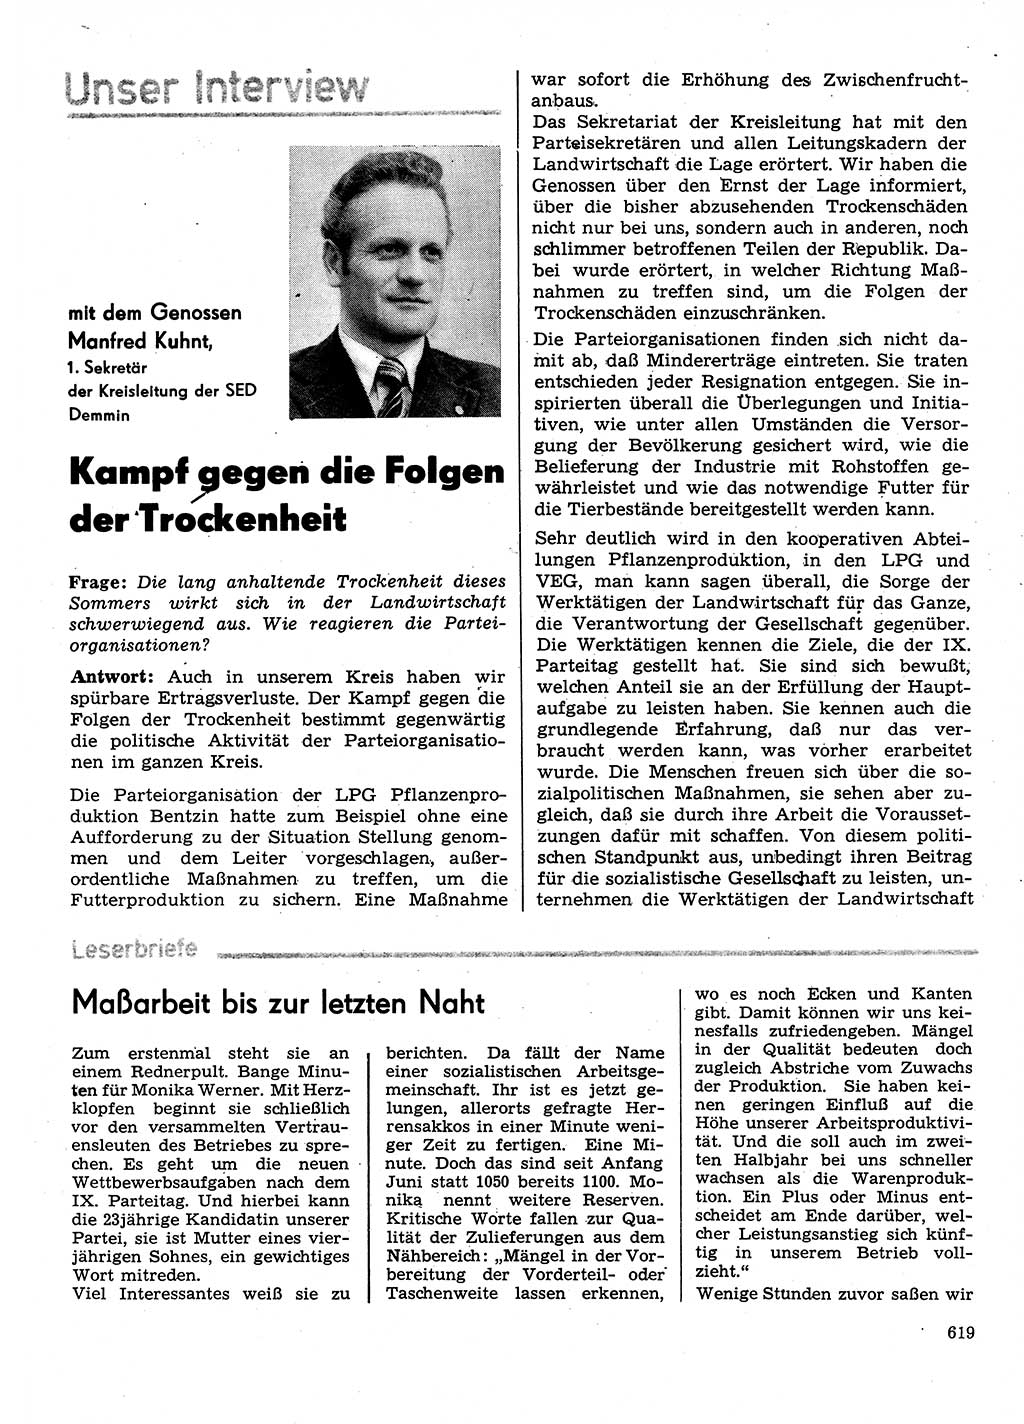 Neuer Weg (NW), Organ des Zentralkomitees (ZK) der SED (Sozialistische Einheitspartei Deutschlands) für Fragen des Parteilebens, 31. Jahrgang [Deutsche Demokratische Republik (DDR)] 1976, Seite 619 (NW ZK SED DDR 1976, S. 619)